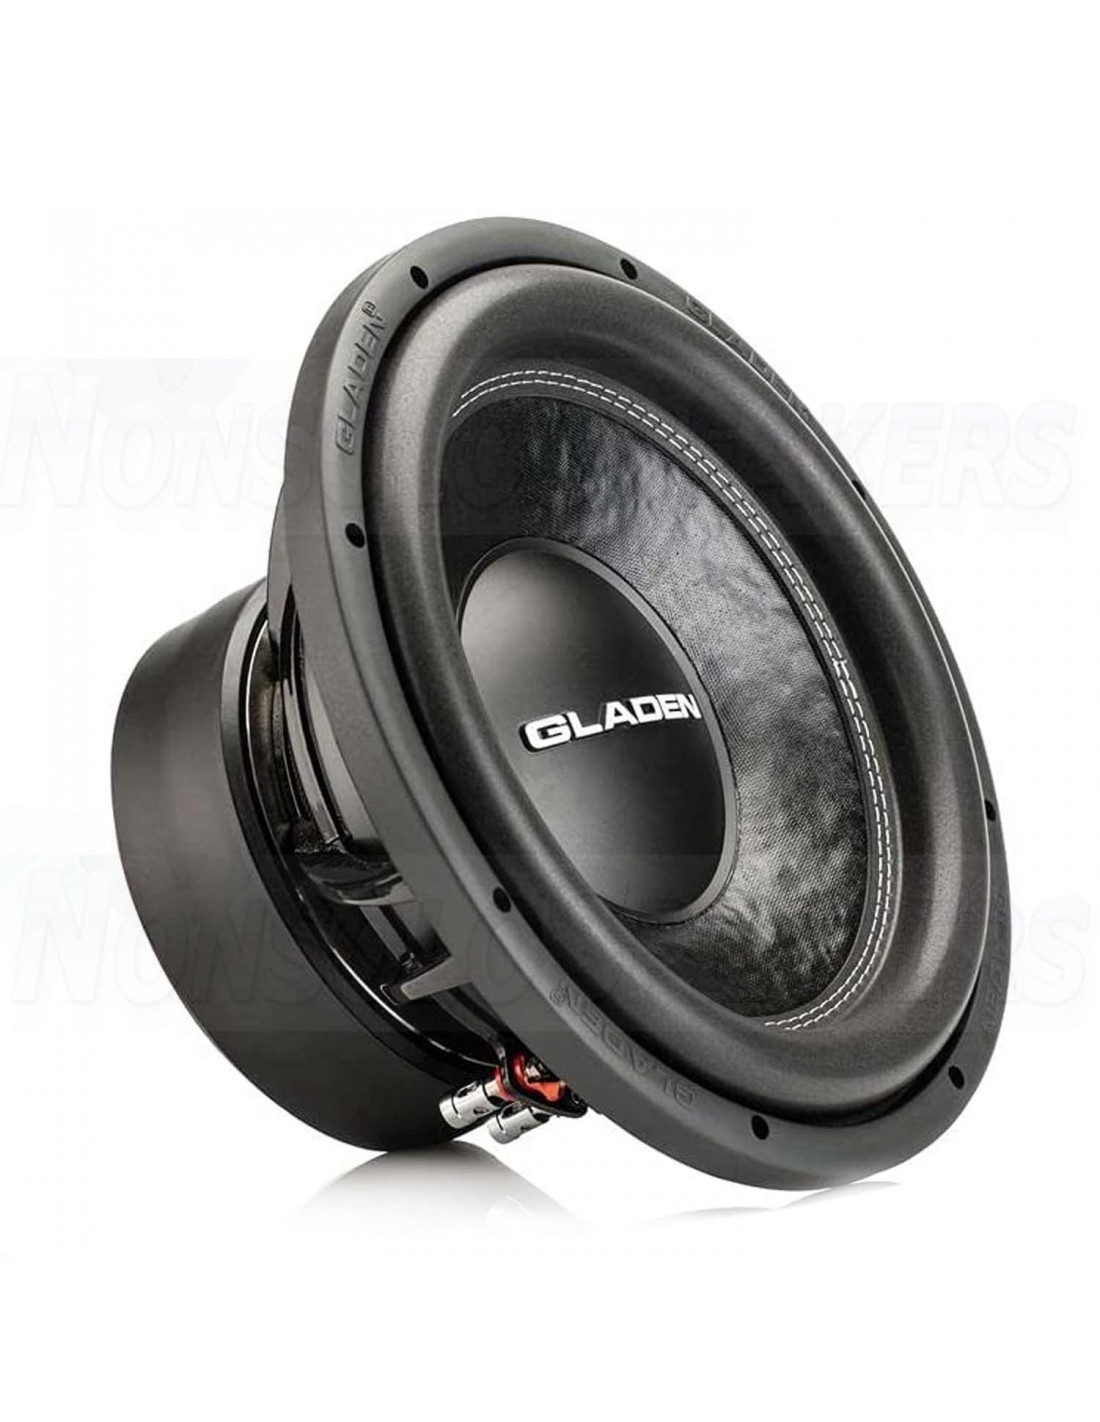 Verheugen heks zich zorgen maken Gladen SQX 12 Extreme Subwoofer speakers 30 cm